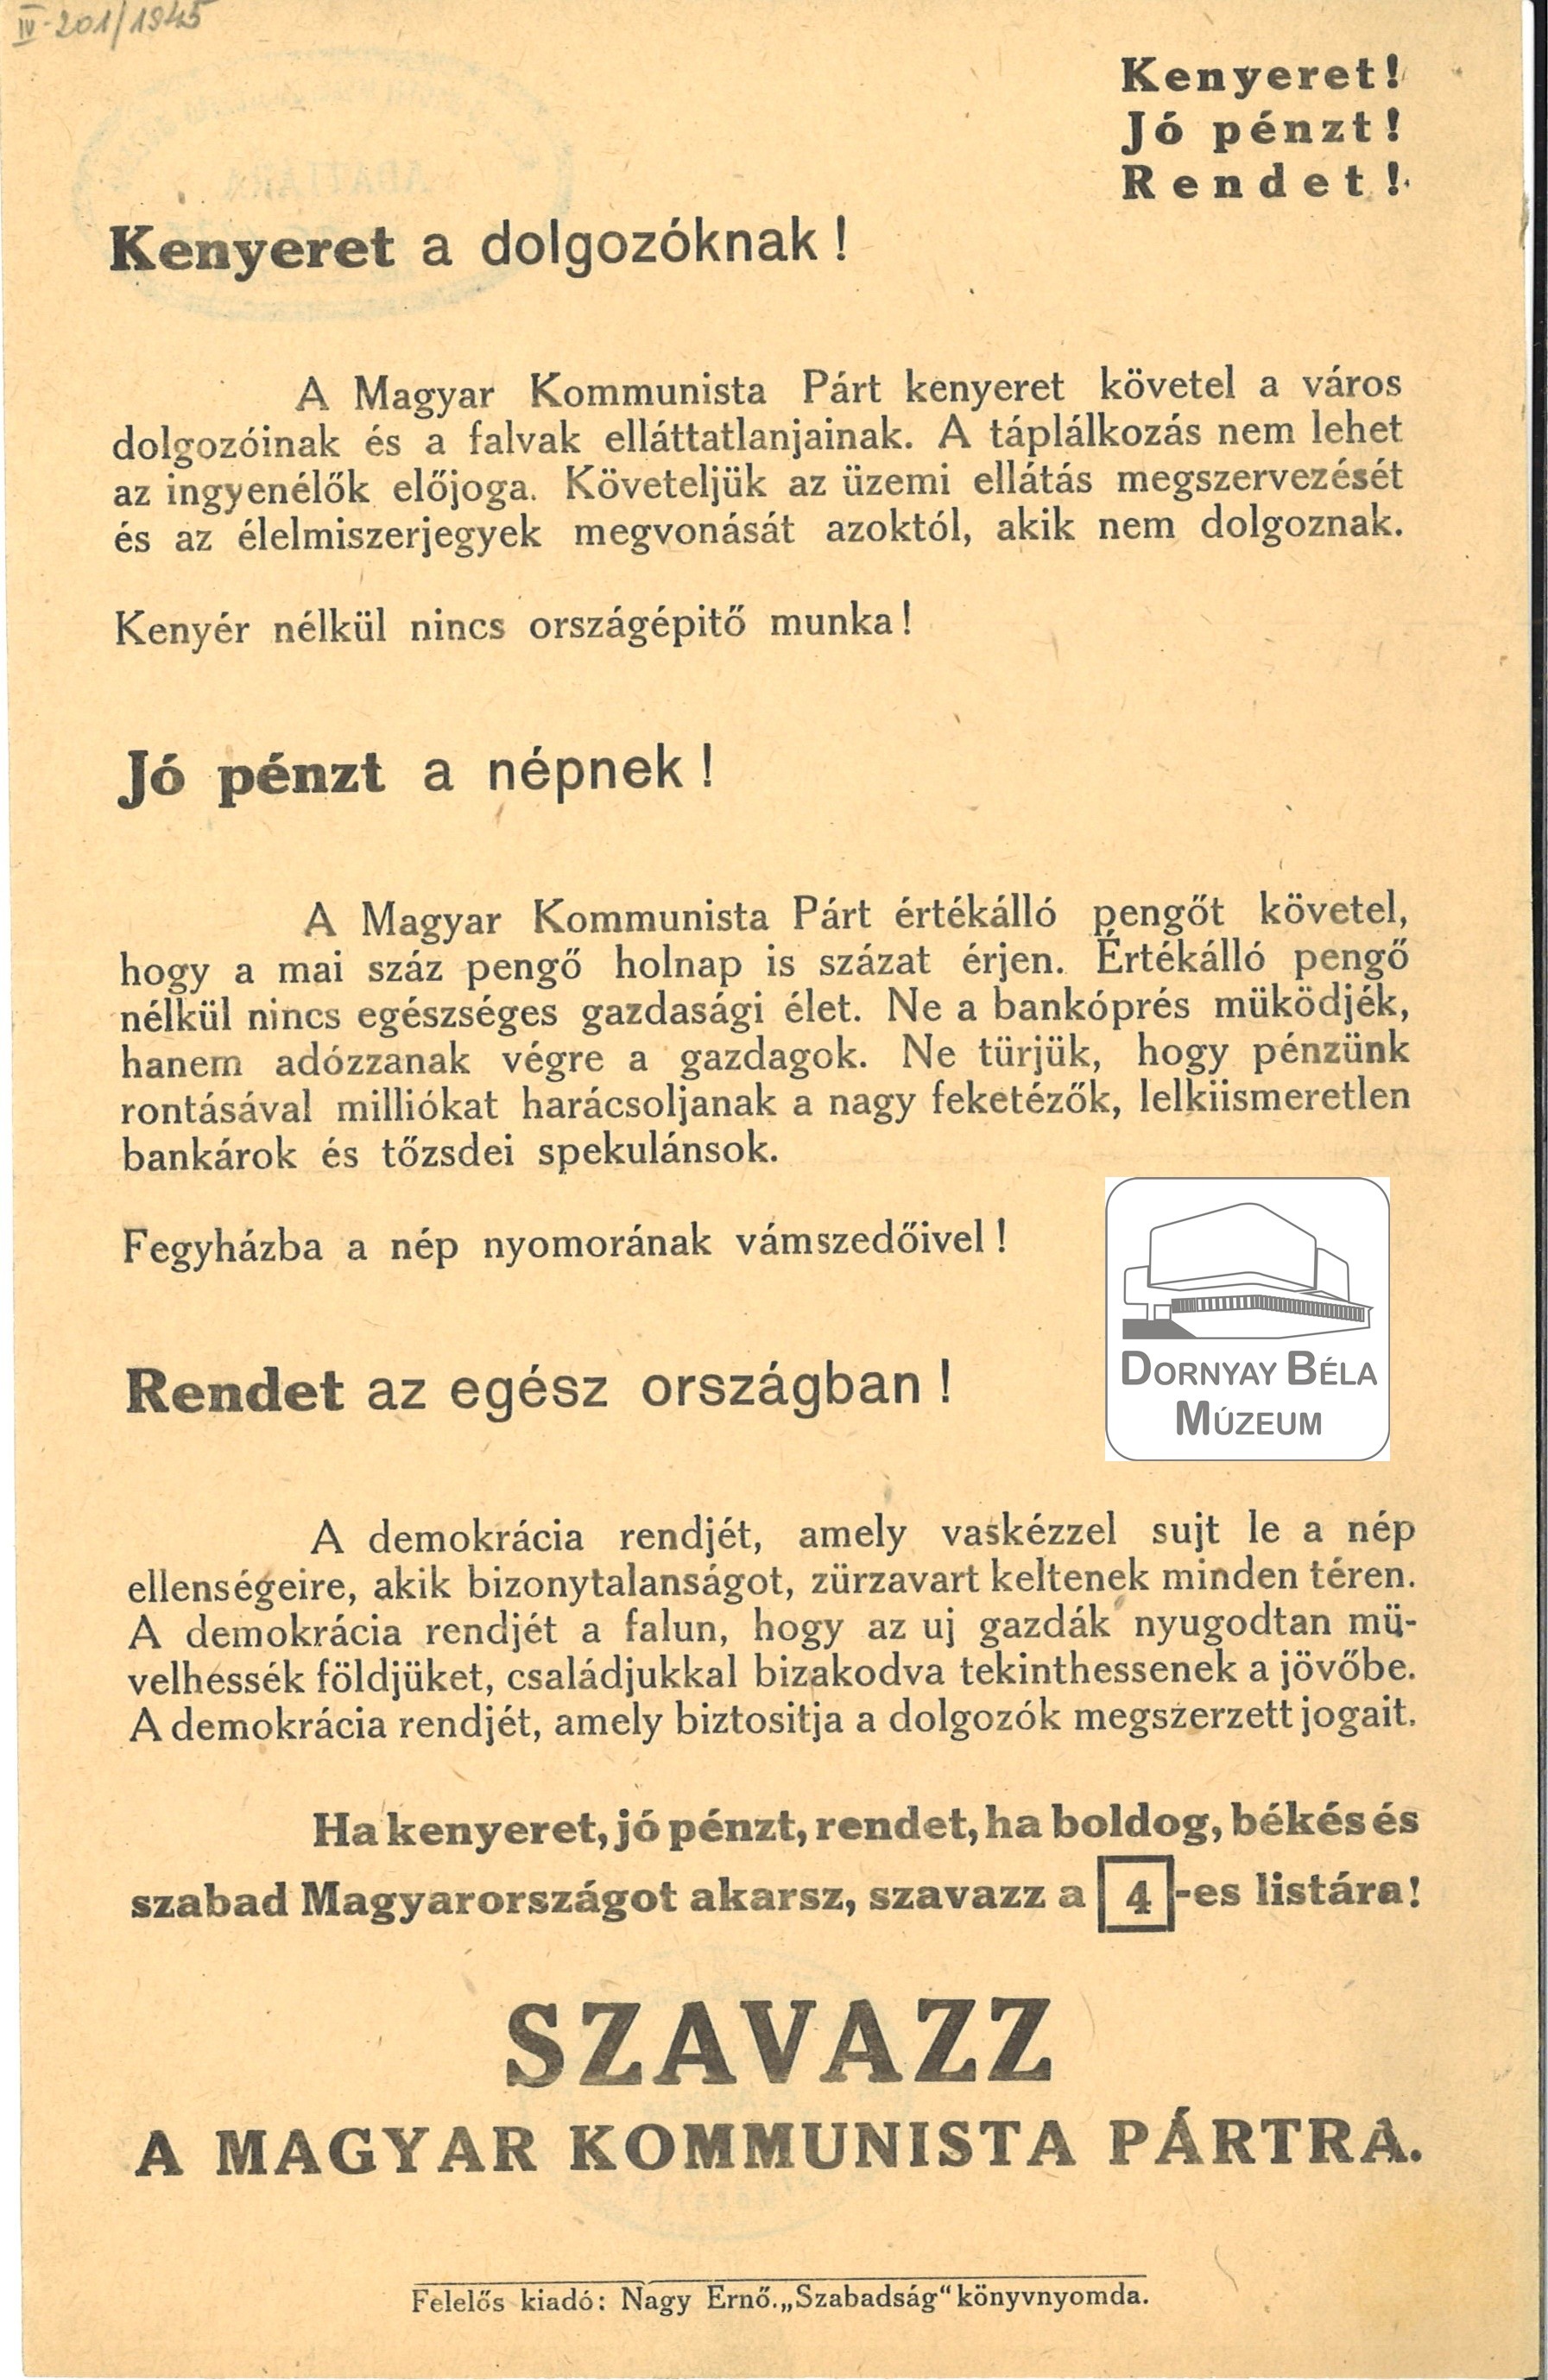 MKP választási röplapja. Kenyeret, jó pénzt, rendet. (Dornyay Béla Múzeum, Salgótarján CC BY-NC-SA)